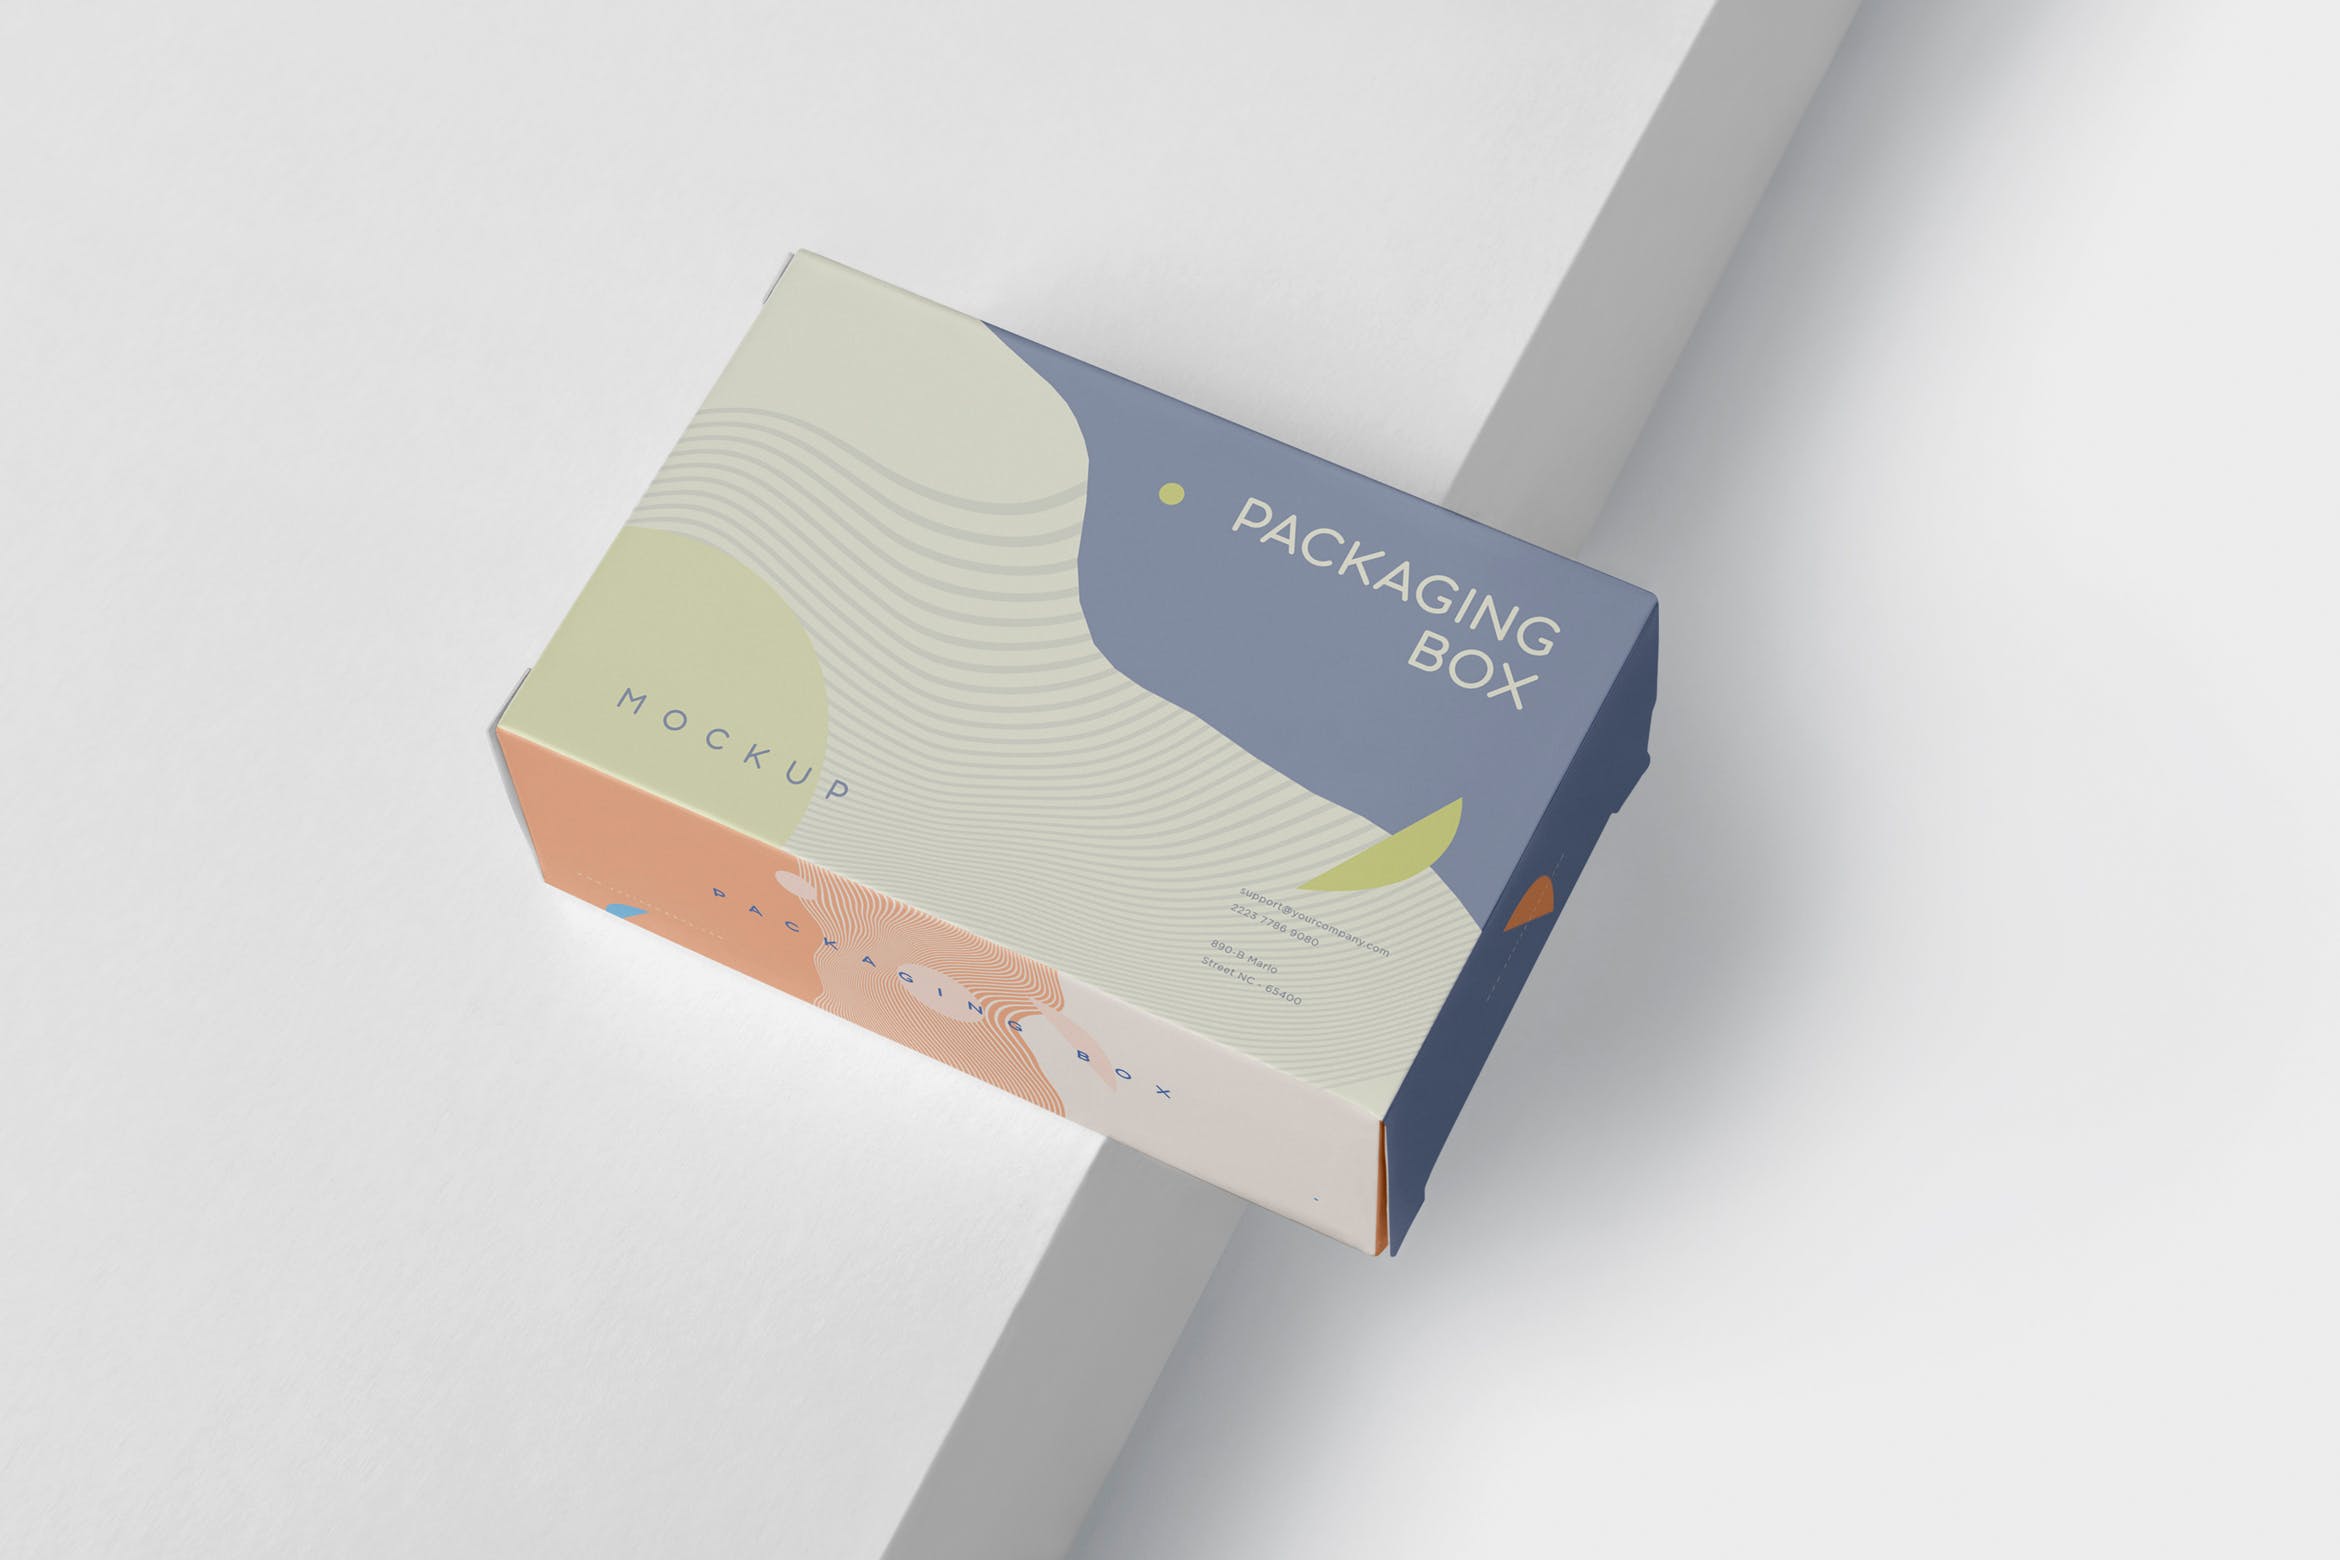 扁平矩形产品包装盒效果图第一素材精选 Package Box Mockup – Slim Rectangle Shape插图